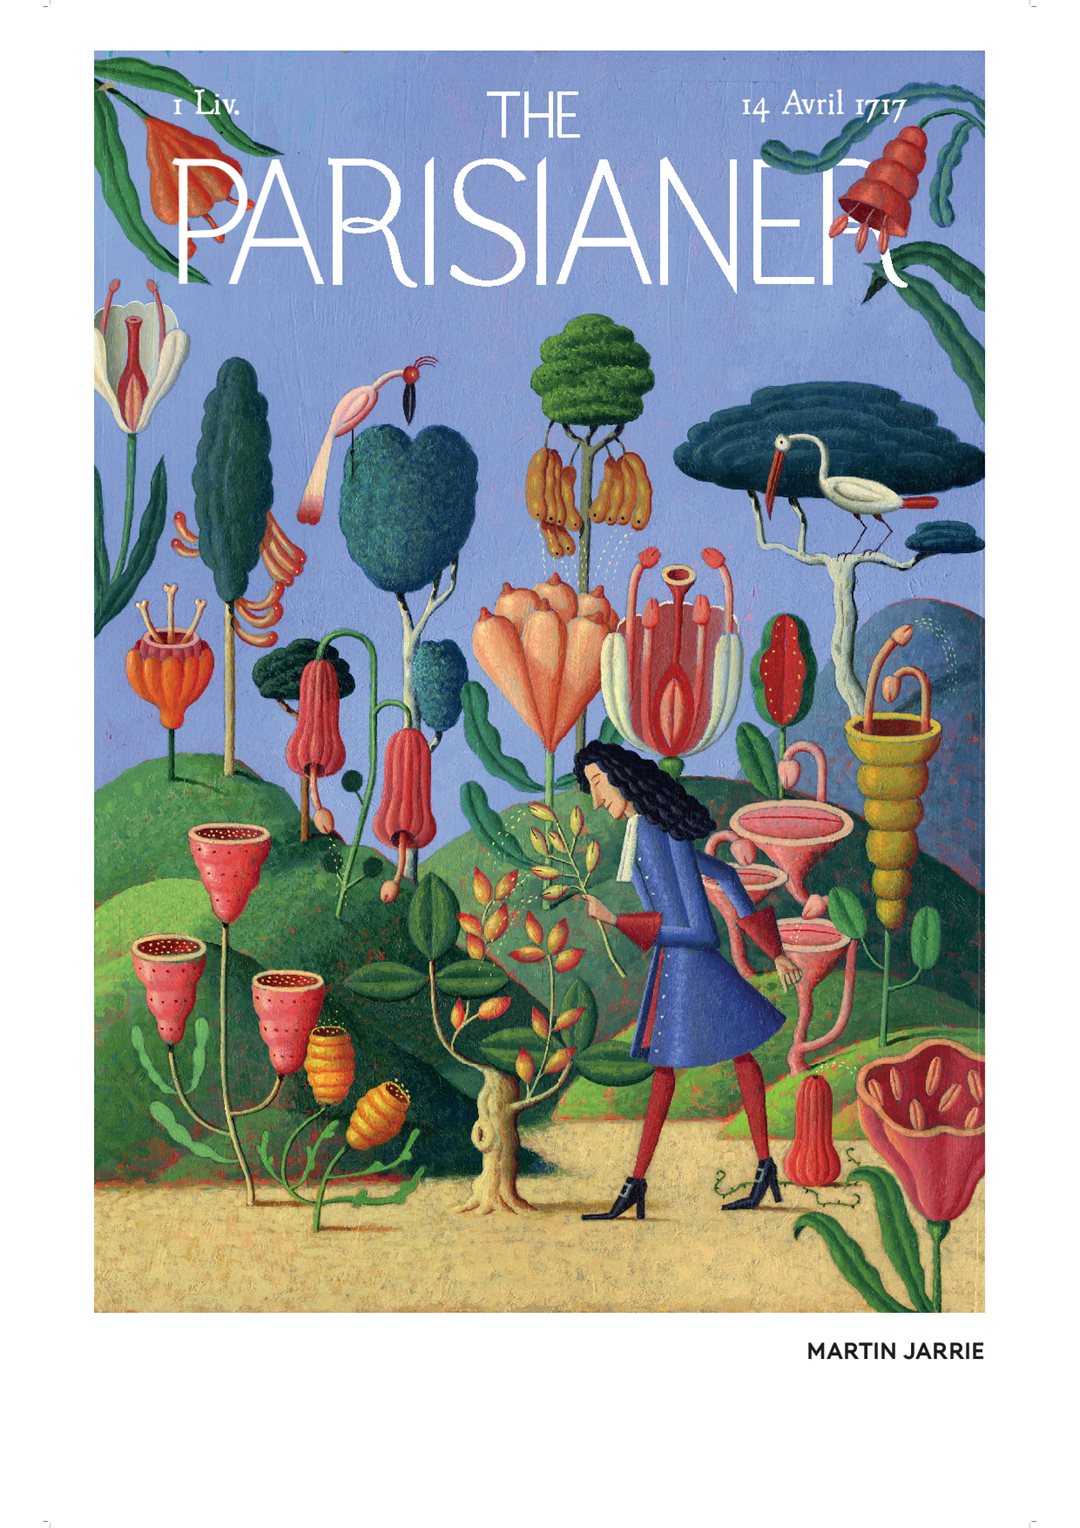 THE PARISIANER AU MUSEUM PANNEAUX_VF04.png